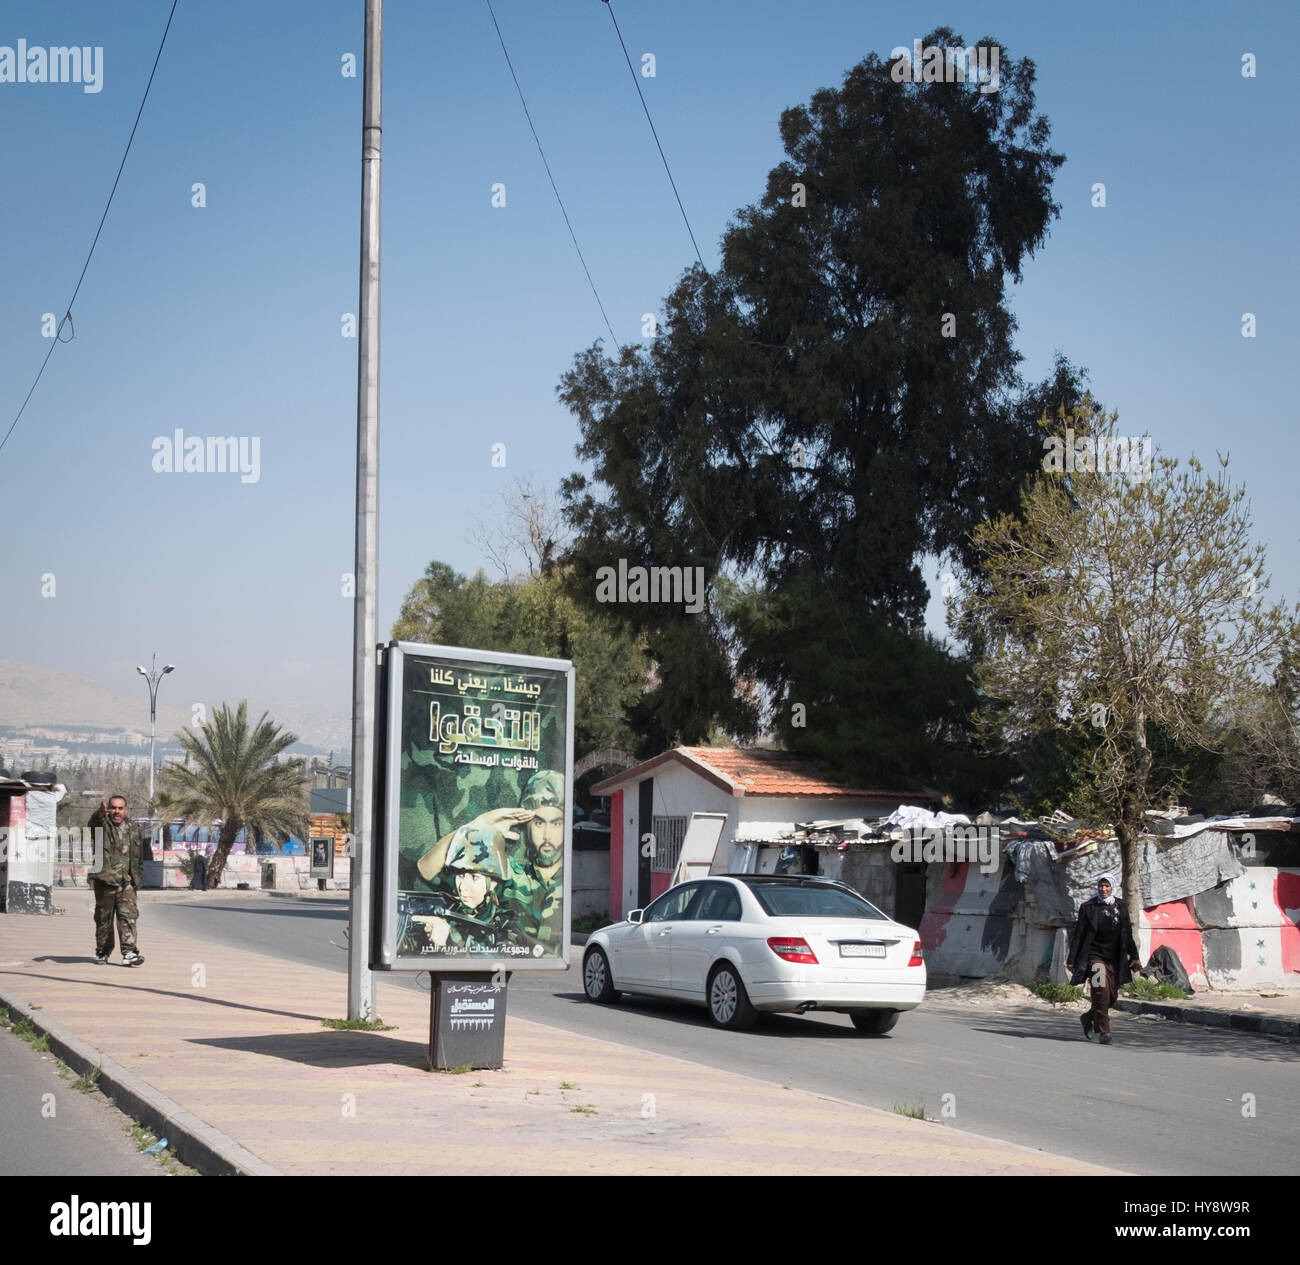 La publicité pour rejoindre l'armée. Damas, Syrie, début 2017 Banque D'Images